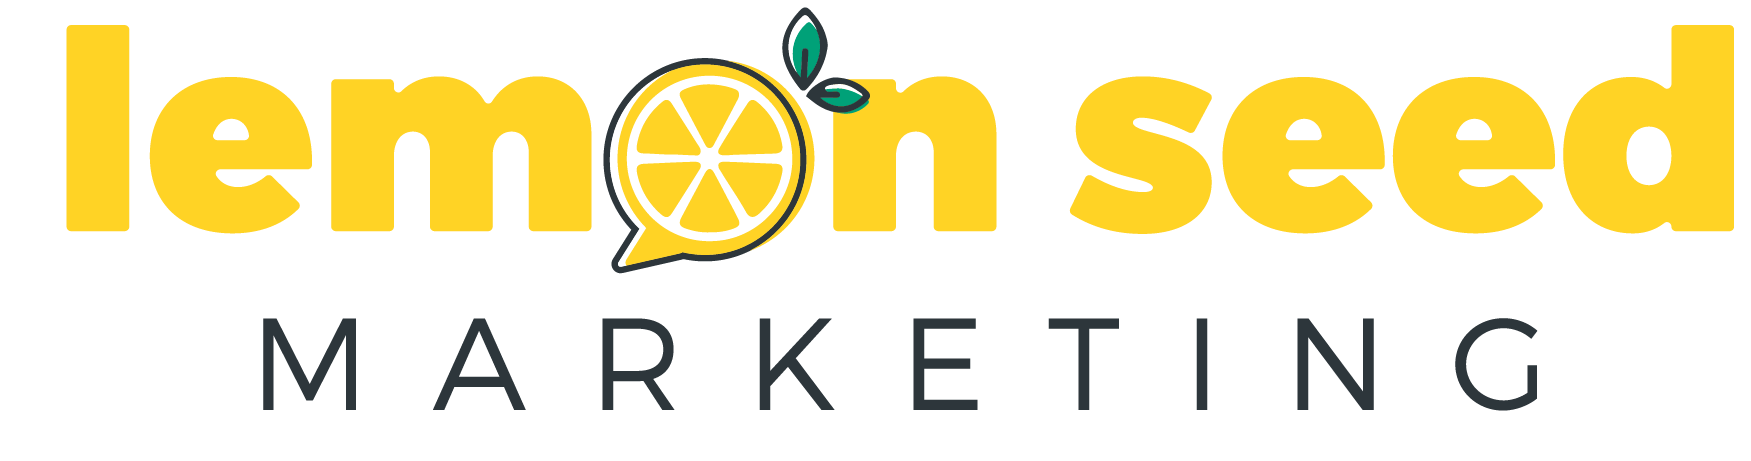 Lemon Seed Marketing